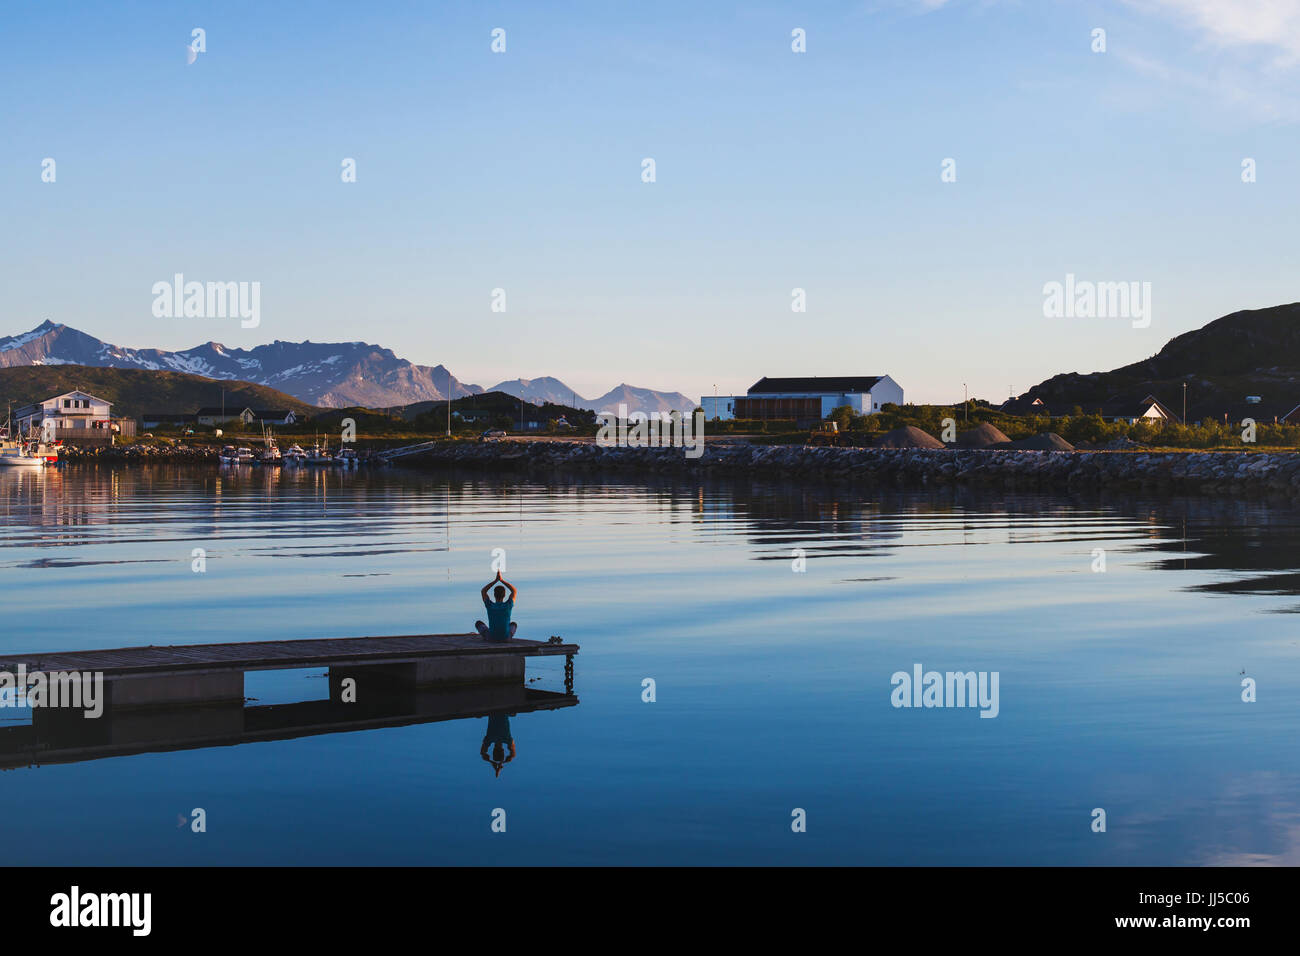 Lo yoga e la meditazione di sfondo, silhouette dell'uomo rilassante sul molo sul lago Foto Stock